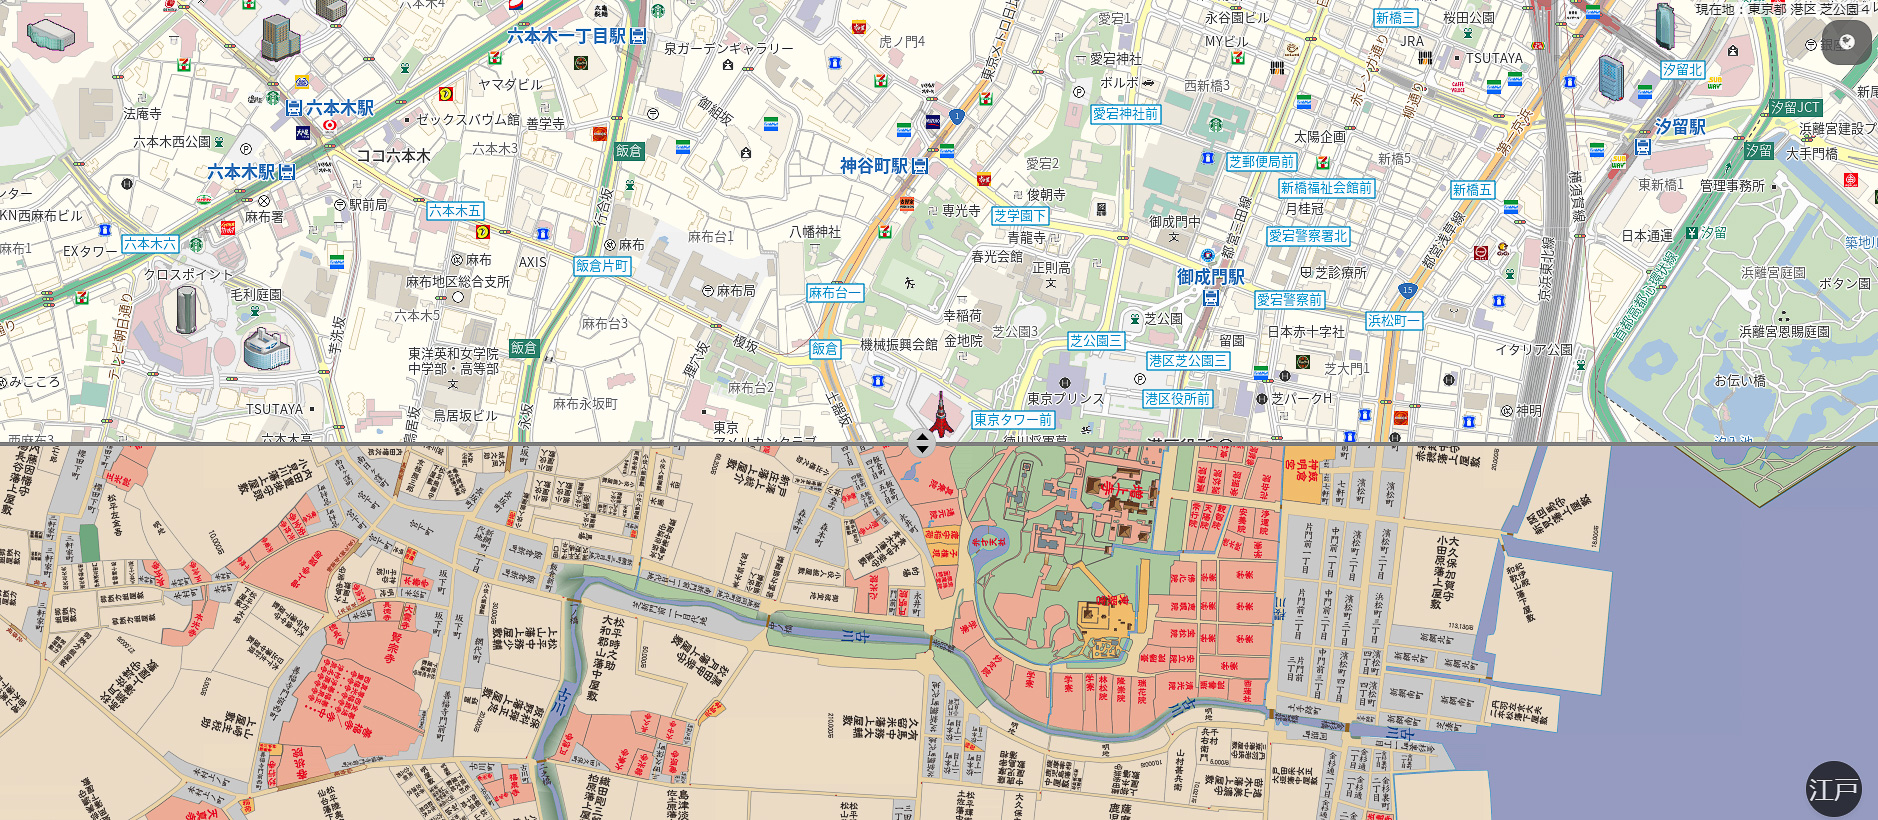 インクリメントP、江戸・昭和・平成の東京を見比べられる「古地図 with